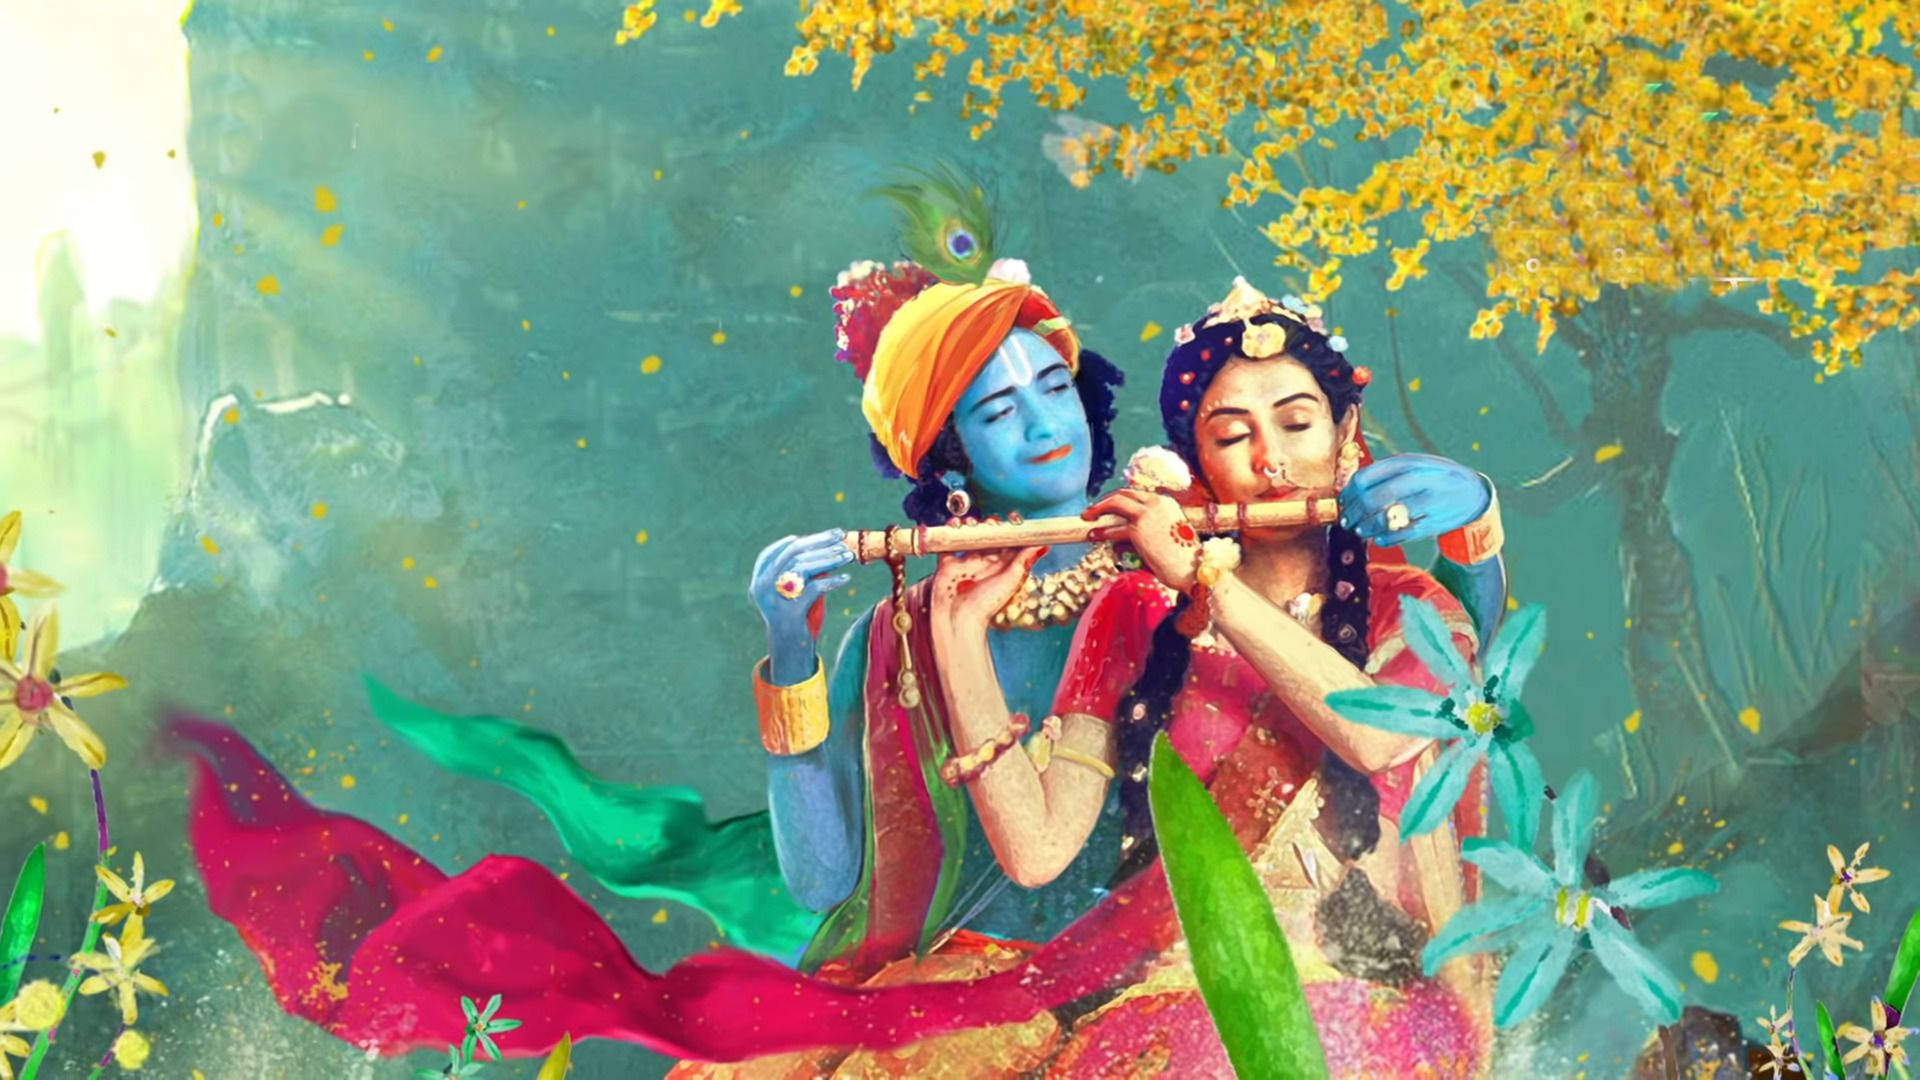 Lord Krishna 4K And Lady Rhada Realistic Digital Art Wallpaper